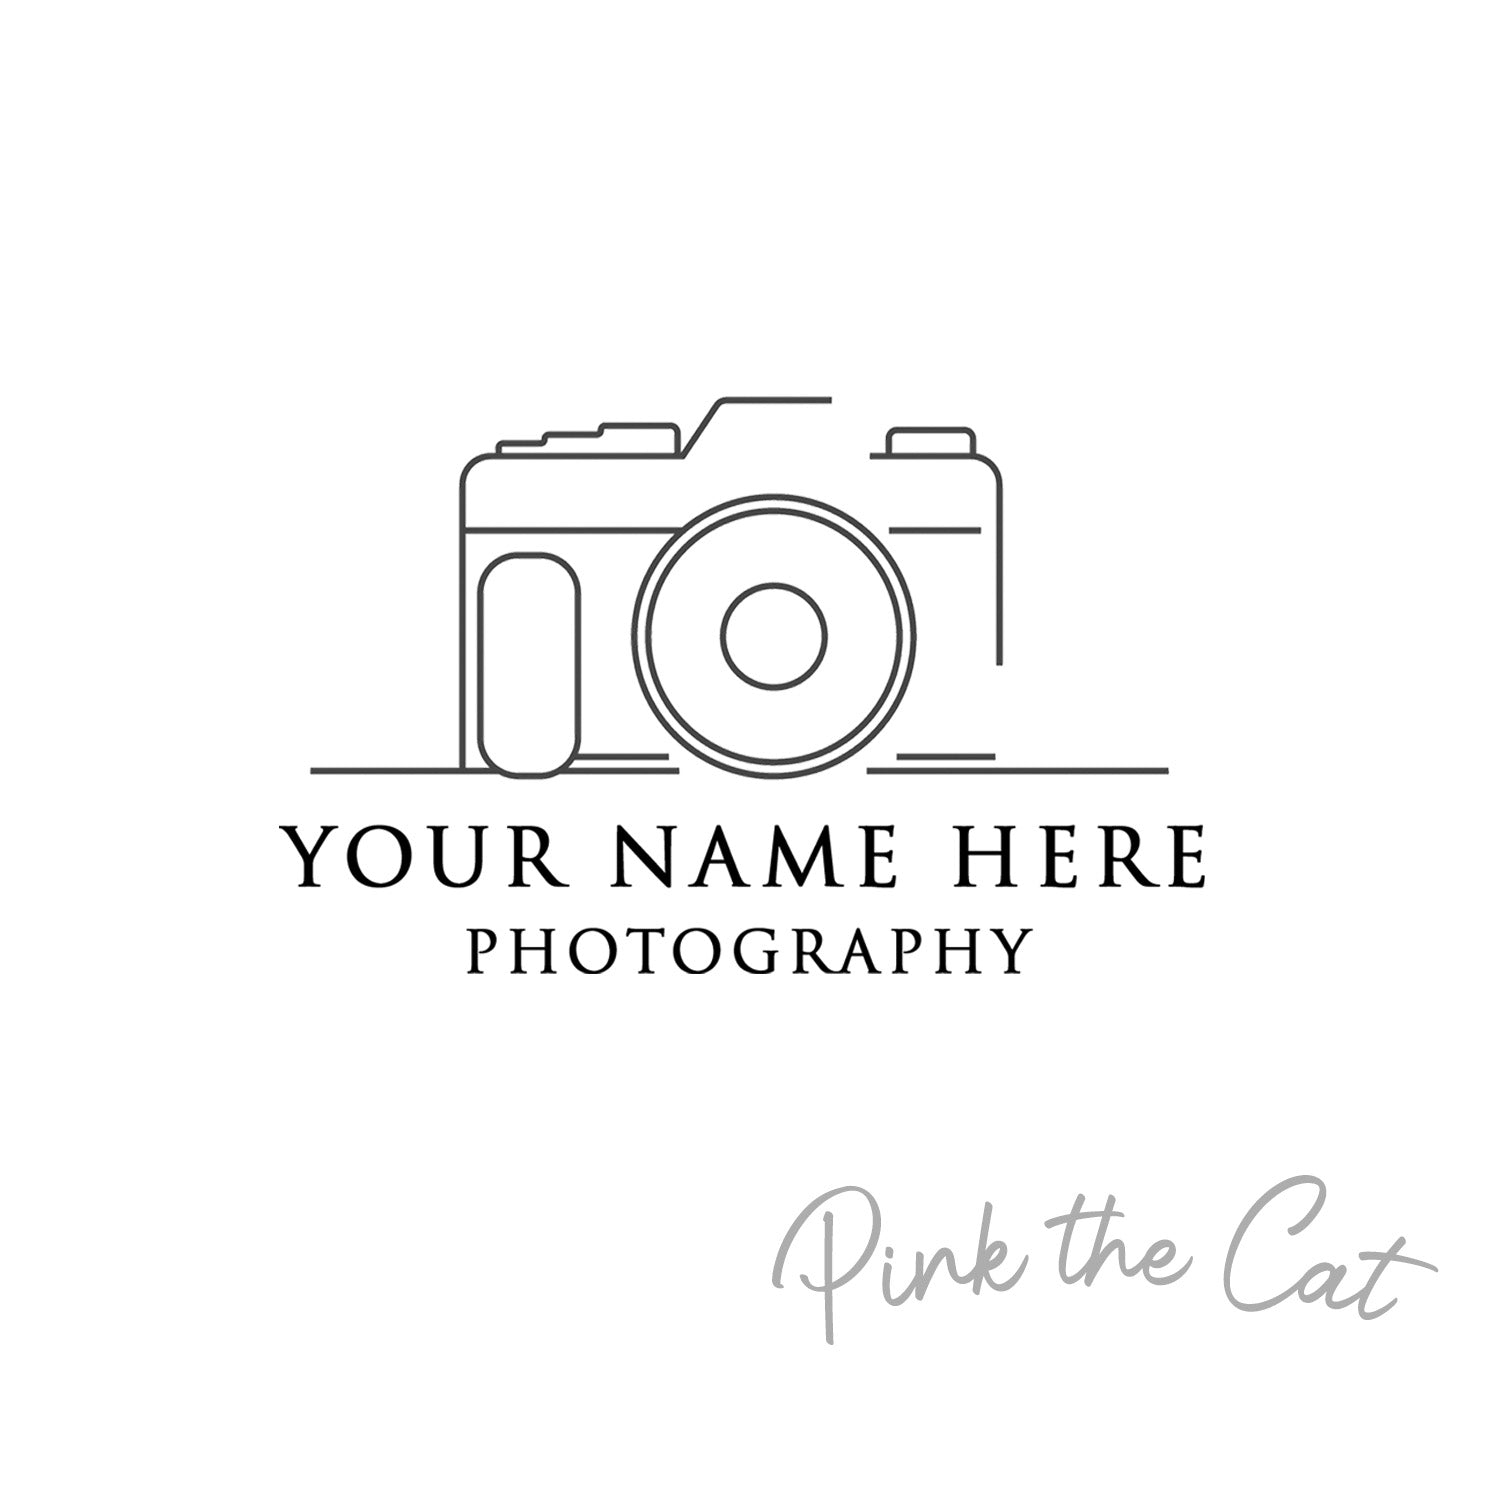 Premade photograpy camera logo design